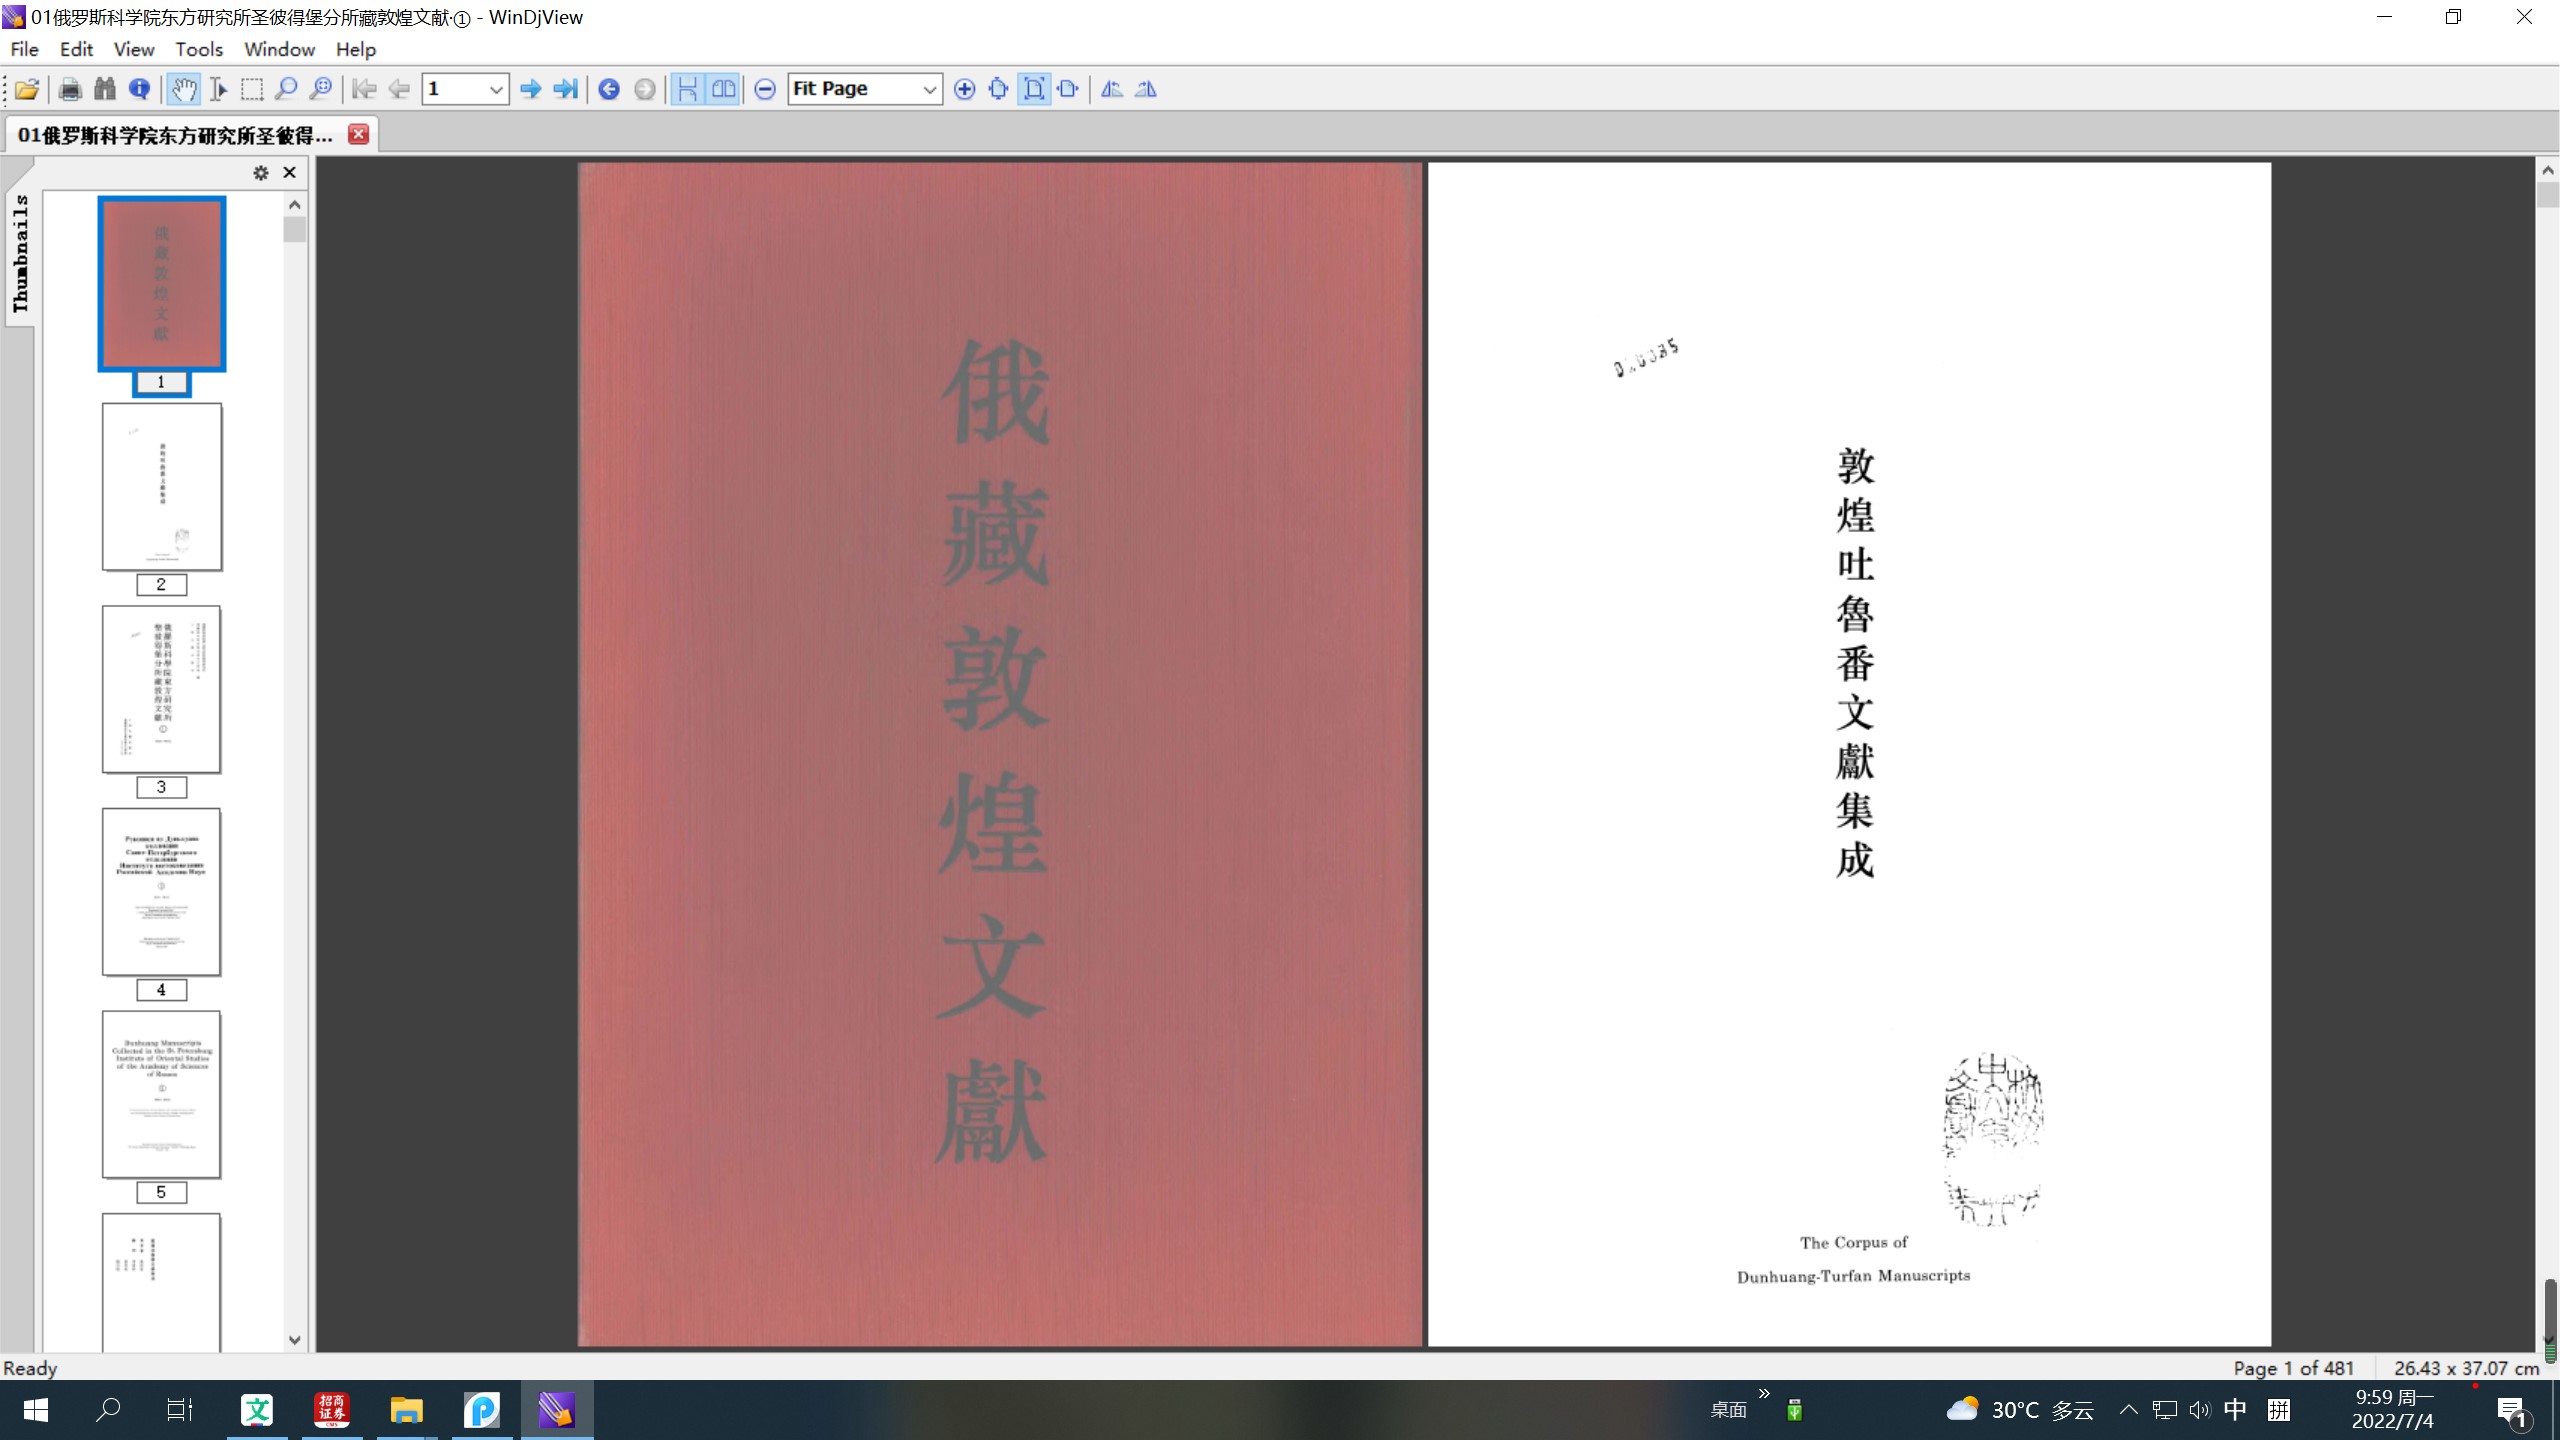 上海図書館藏敦煌吐魯番文獻 全4冊 上海古籍出版社 - 人文、社会